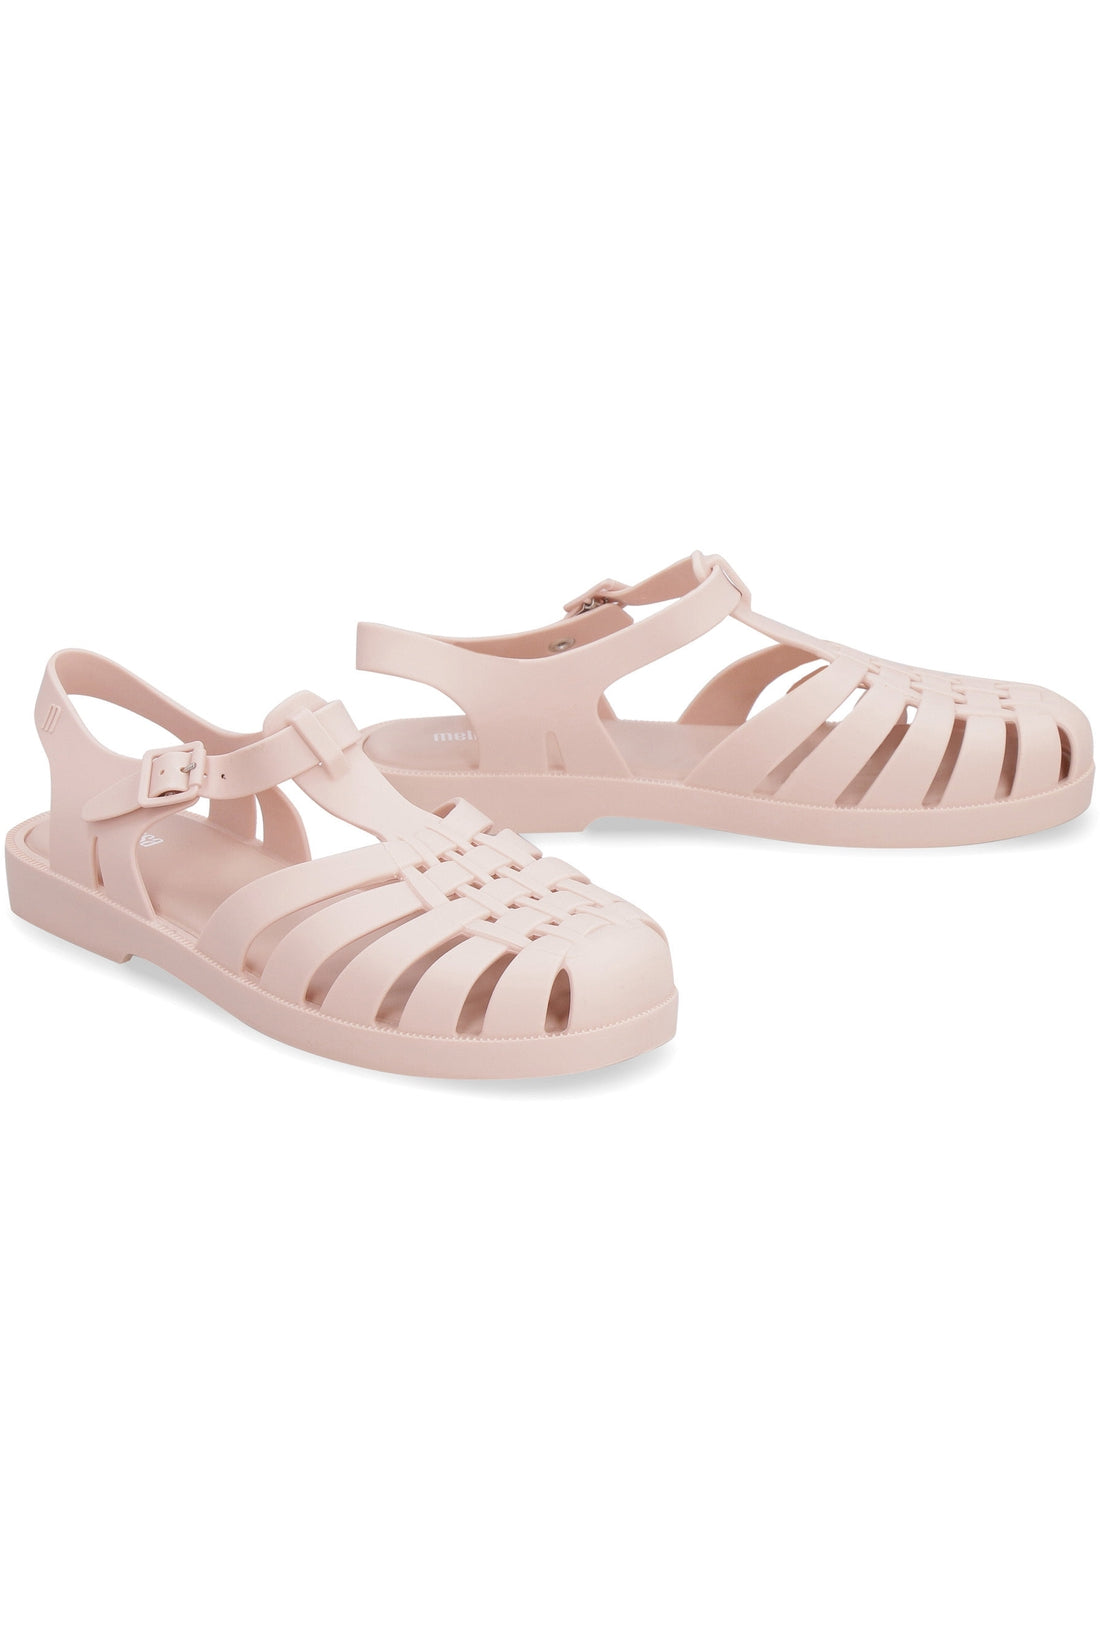 Piralo-OUTLET-SALE-Melissa Possession PVC sandals-ARCHIVIST